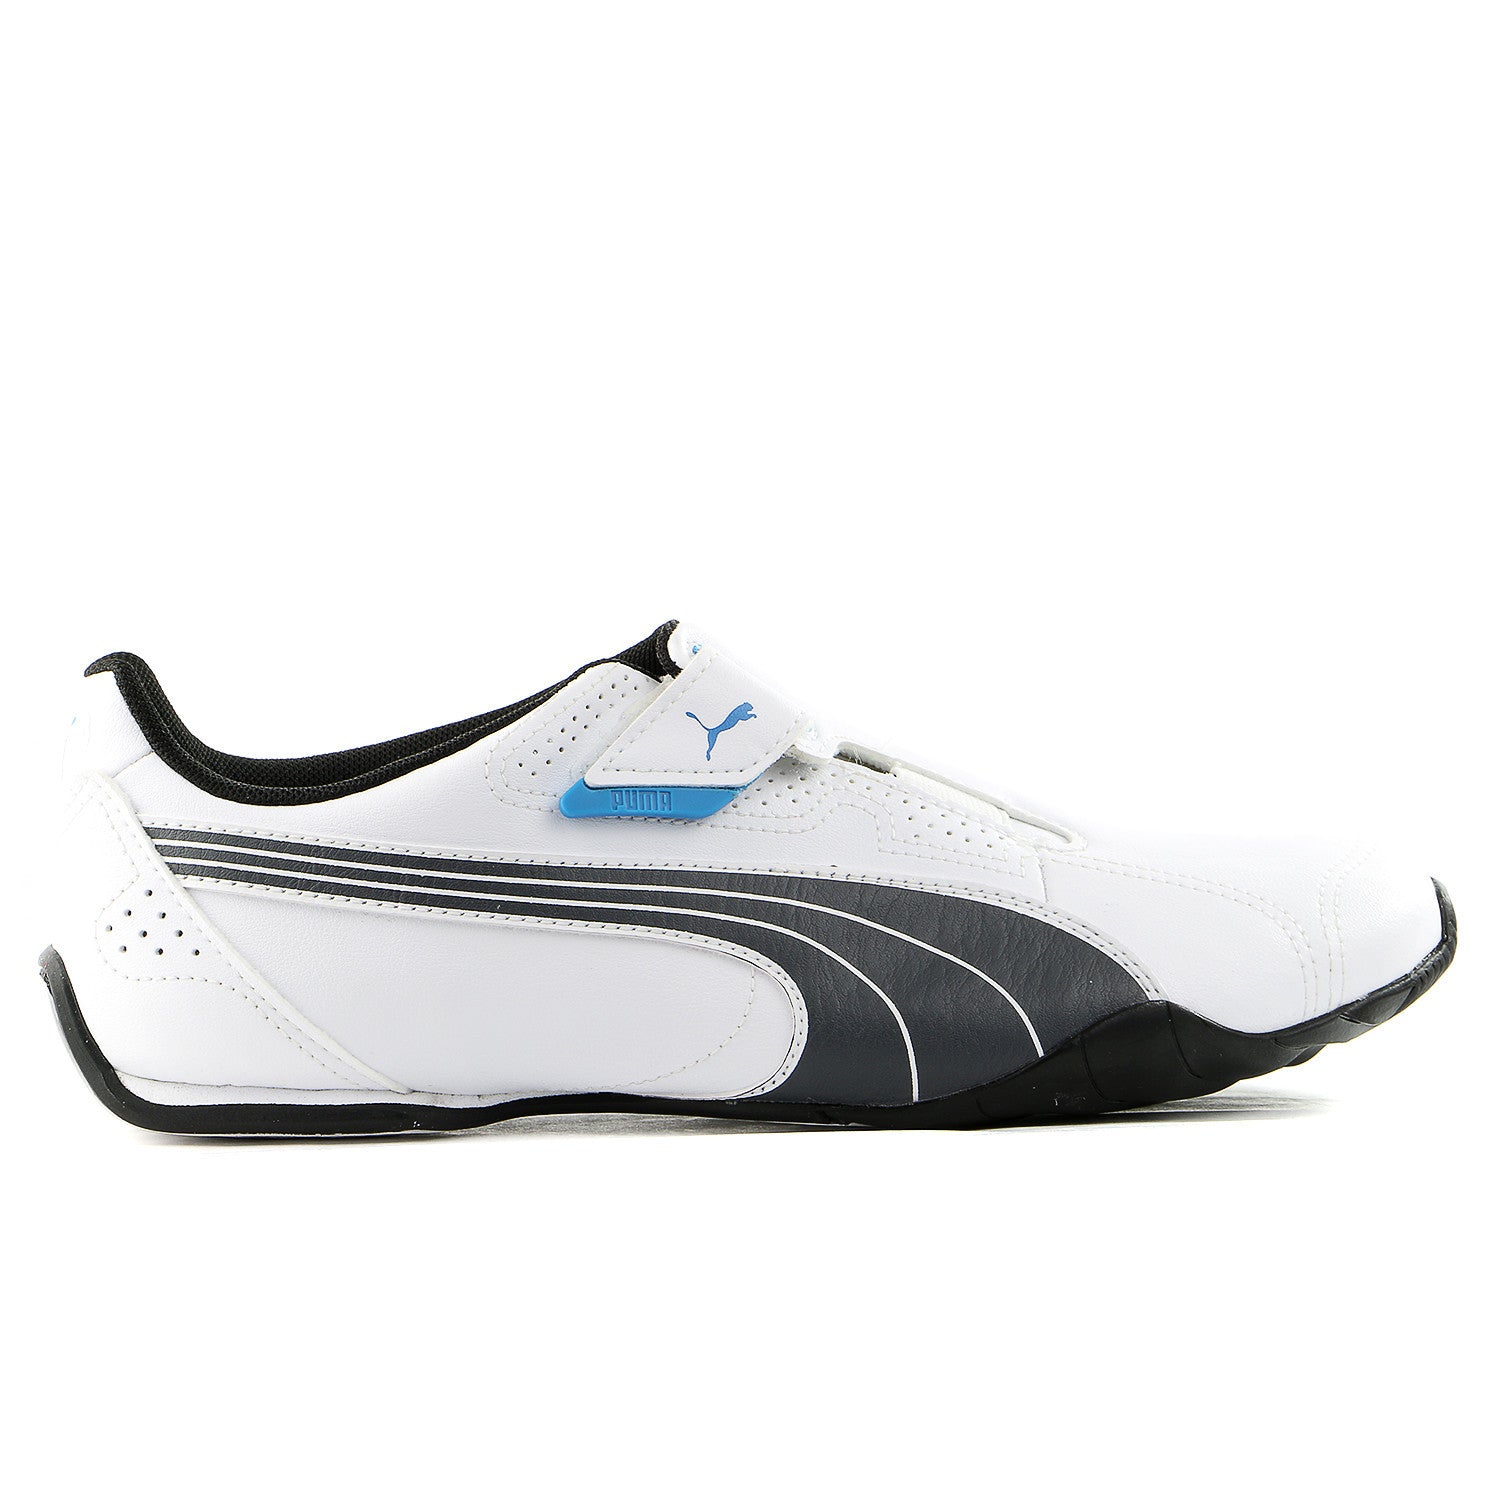 HugeDomains.com | Sport shoes, Pumas shoes, Shoe boots